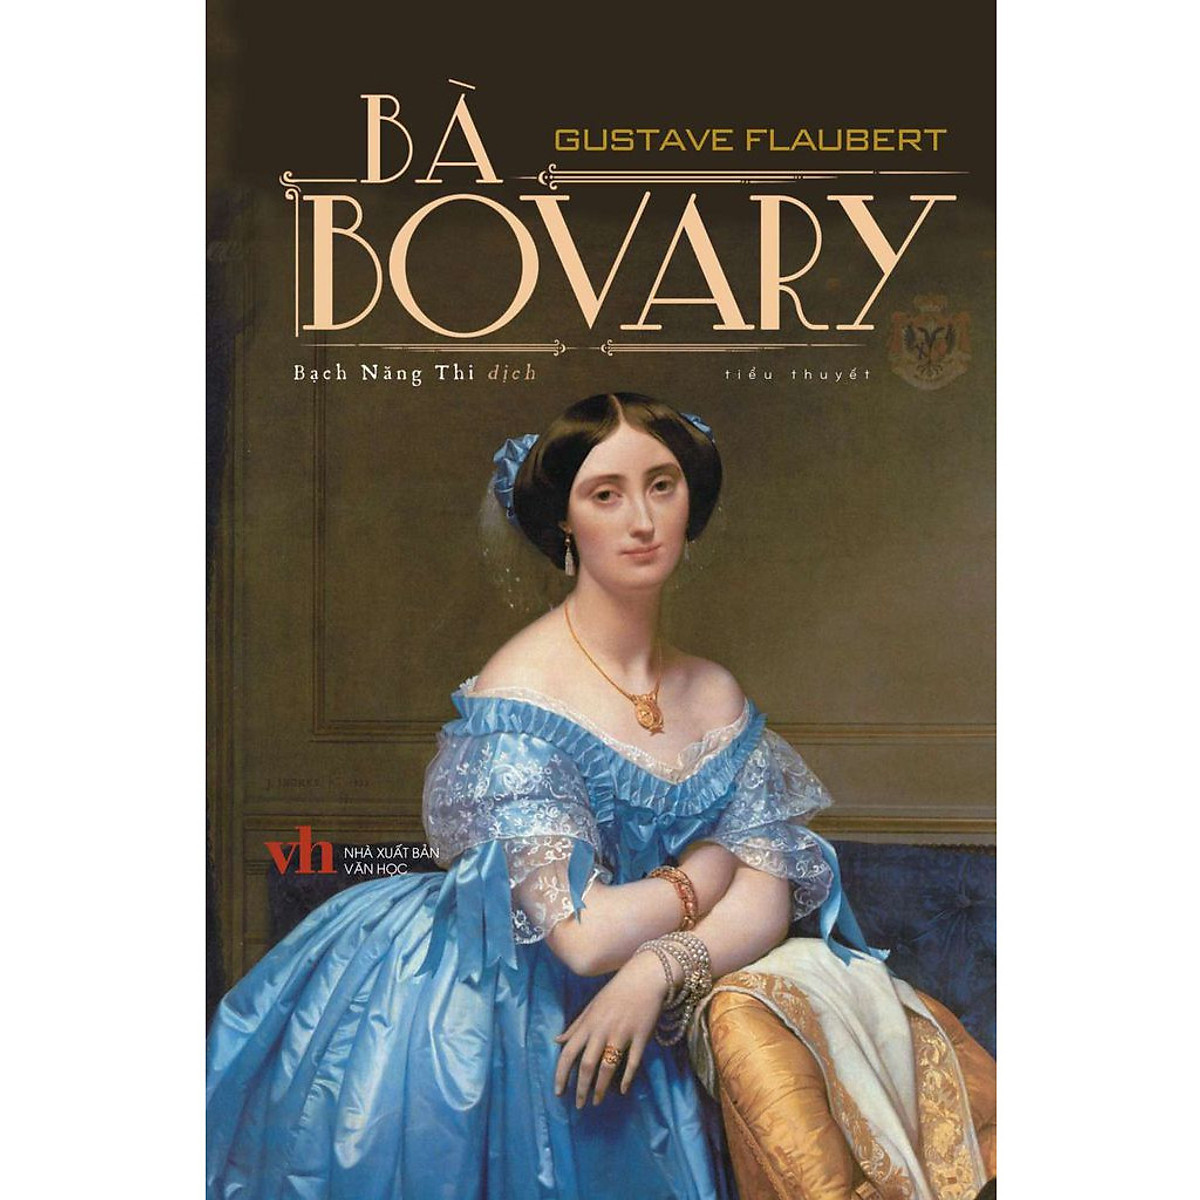 Bà Bovary - Một trong những tiểu thuyết hay nhất mọi thời đại